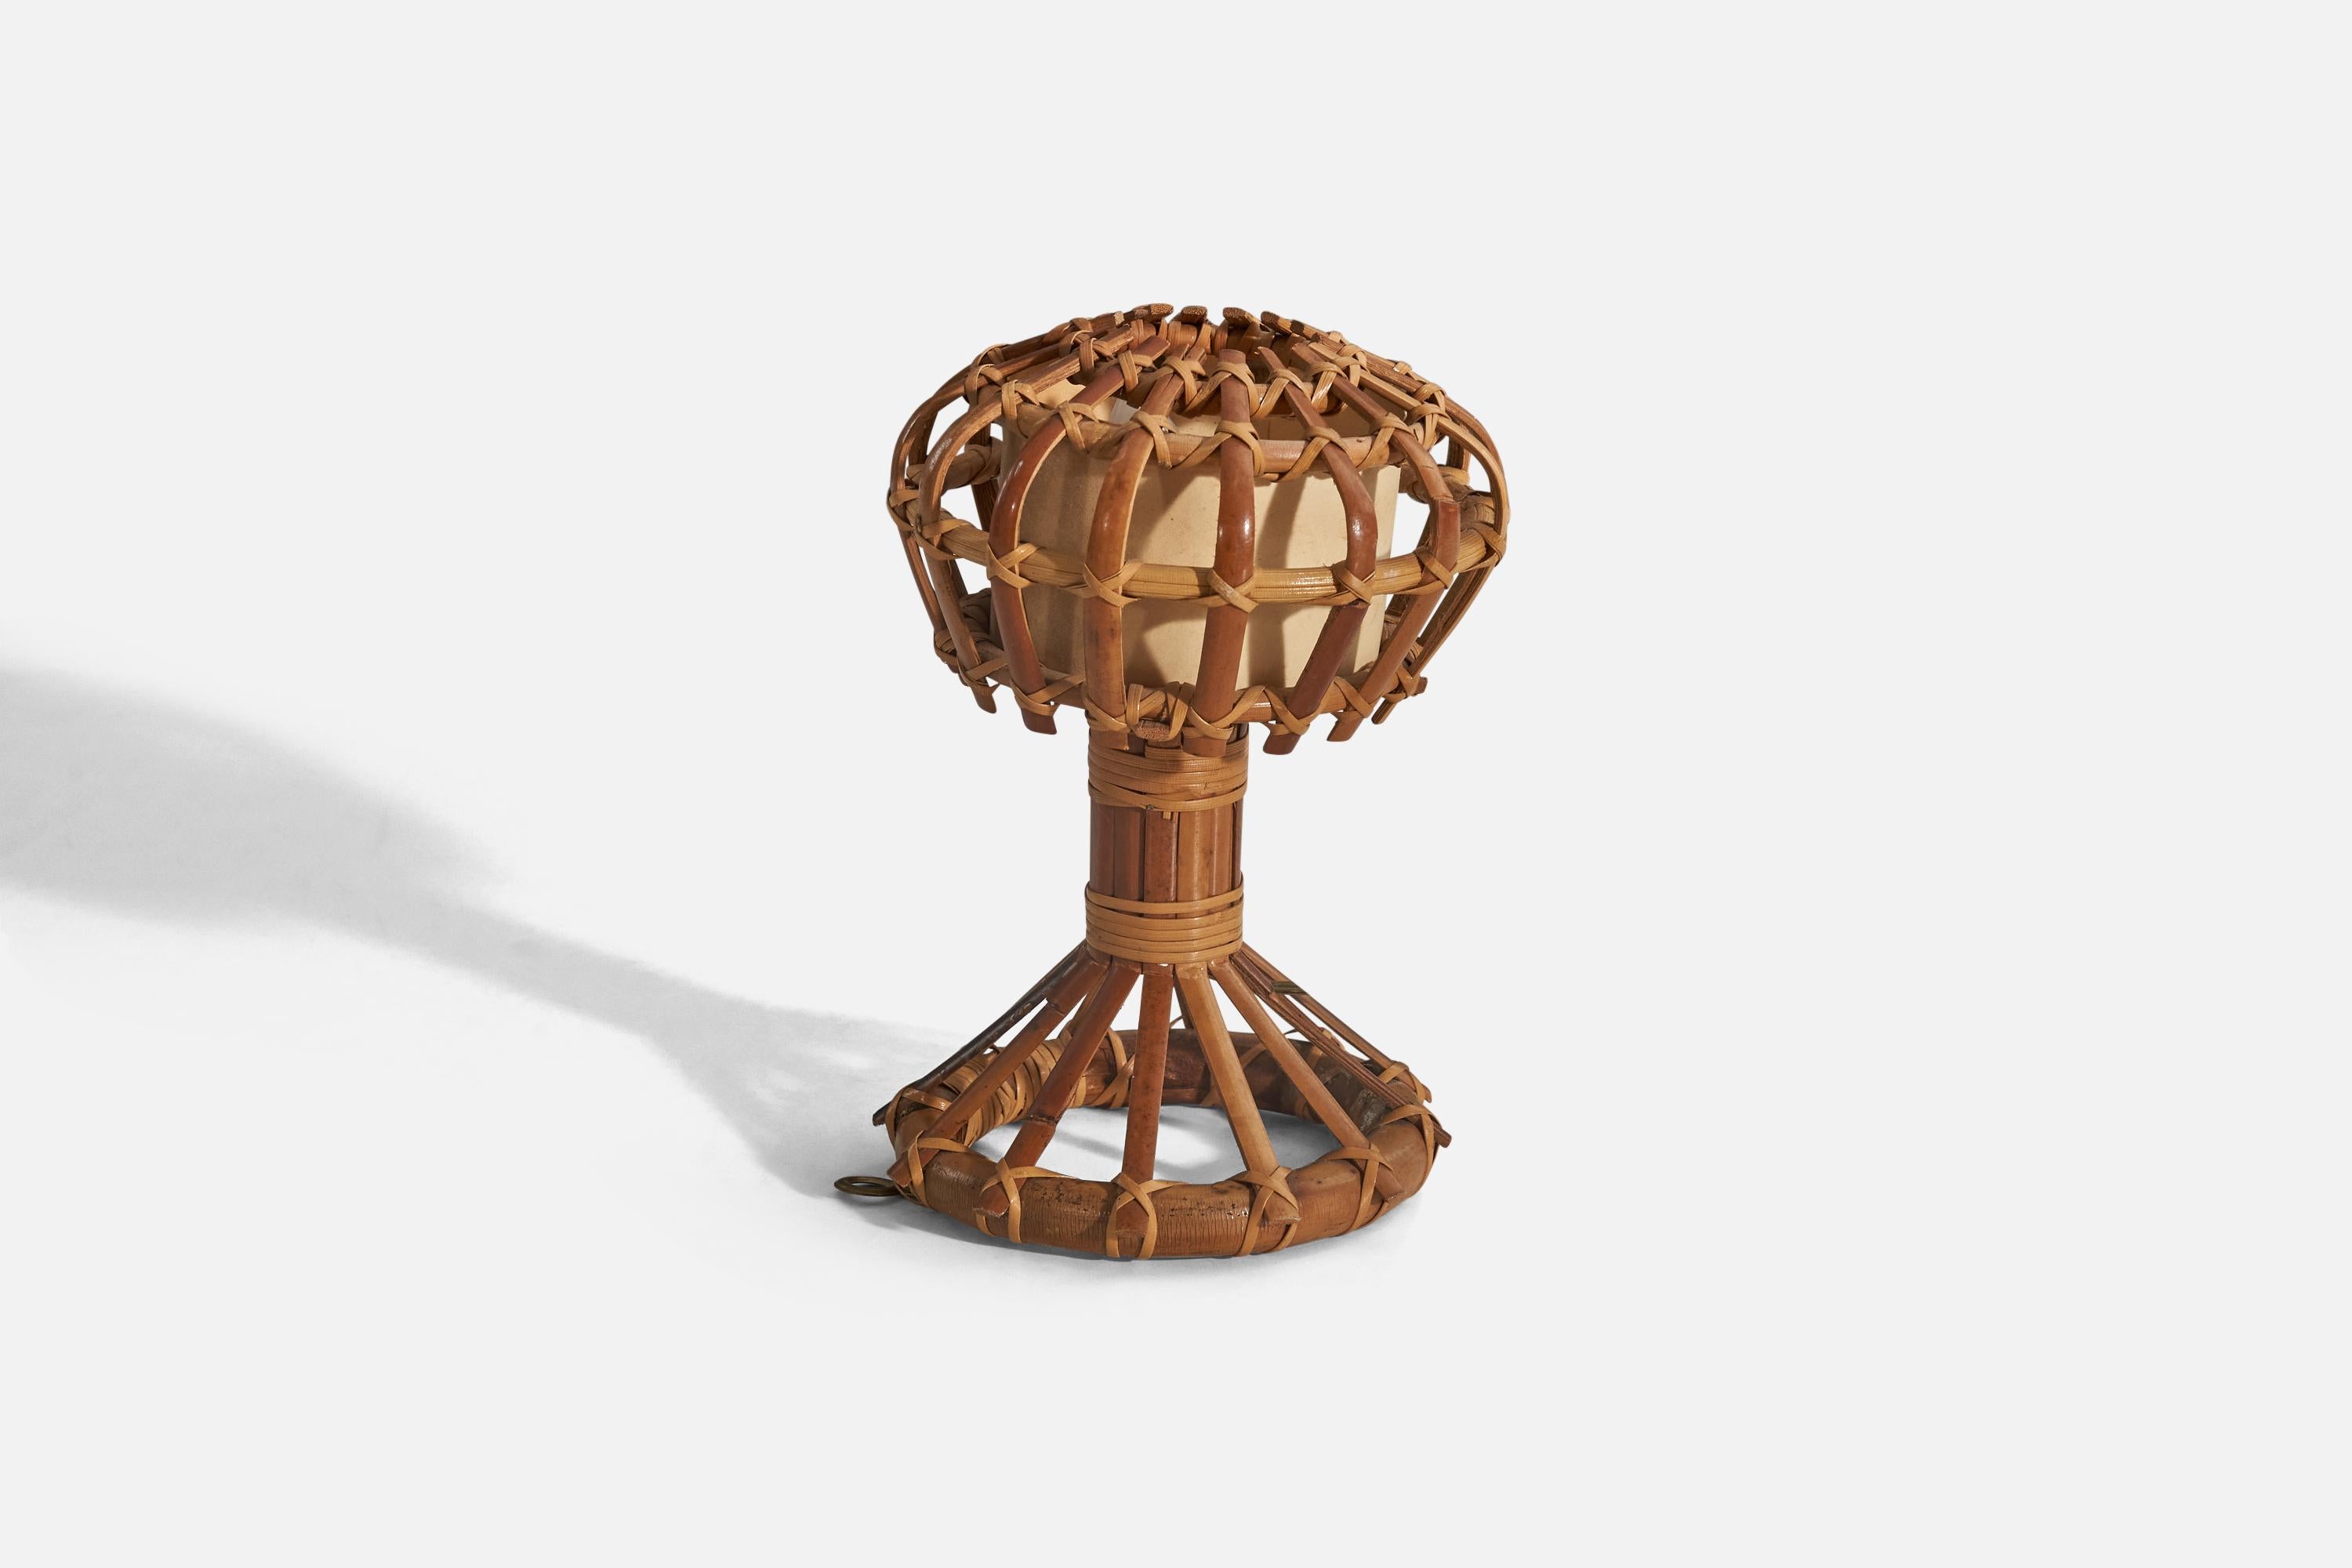 Lampe de table en bambou et rotin conçue et produite en Italie, années 1970.

